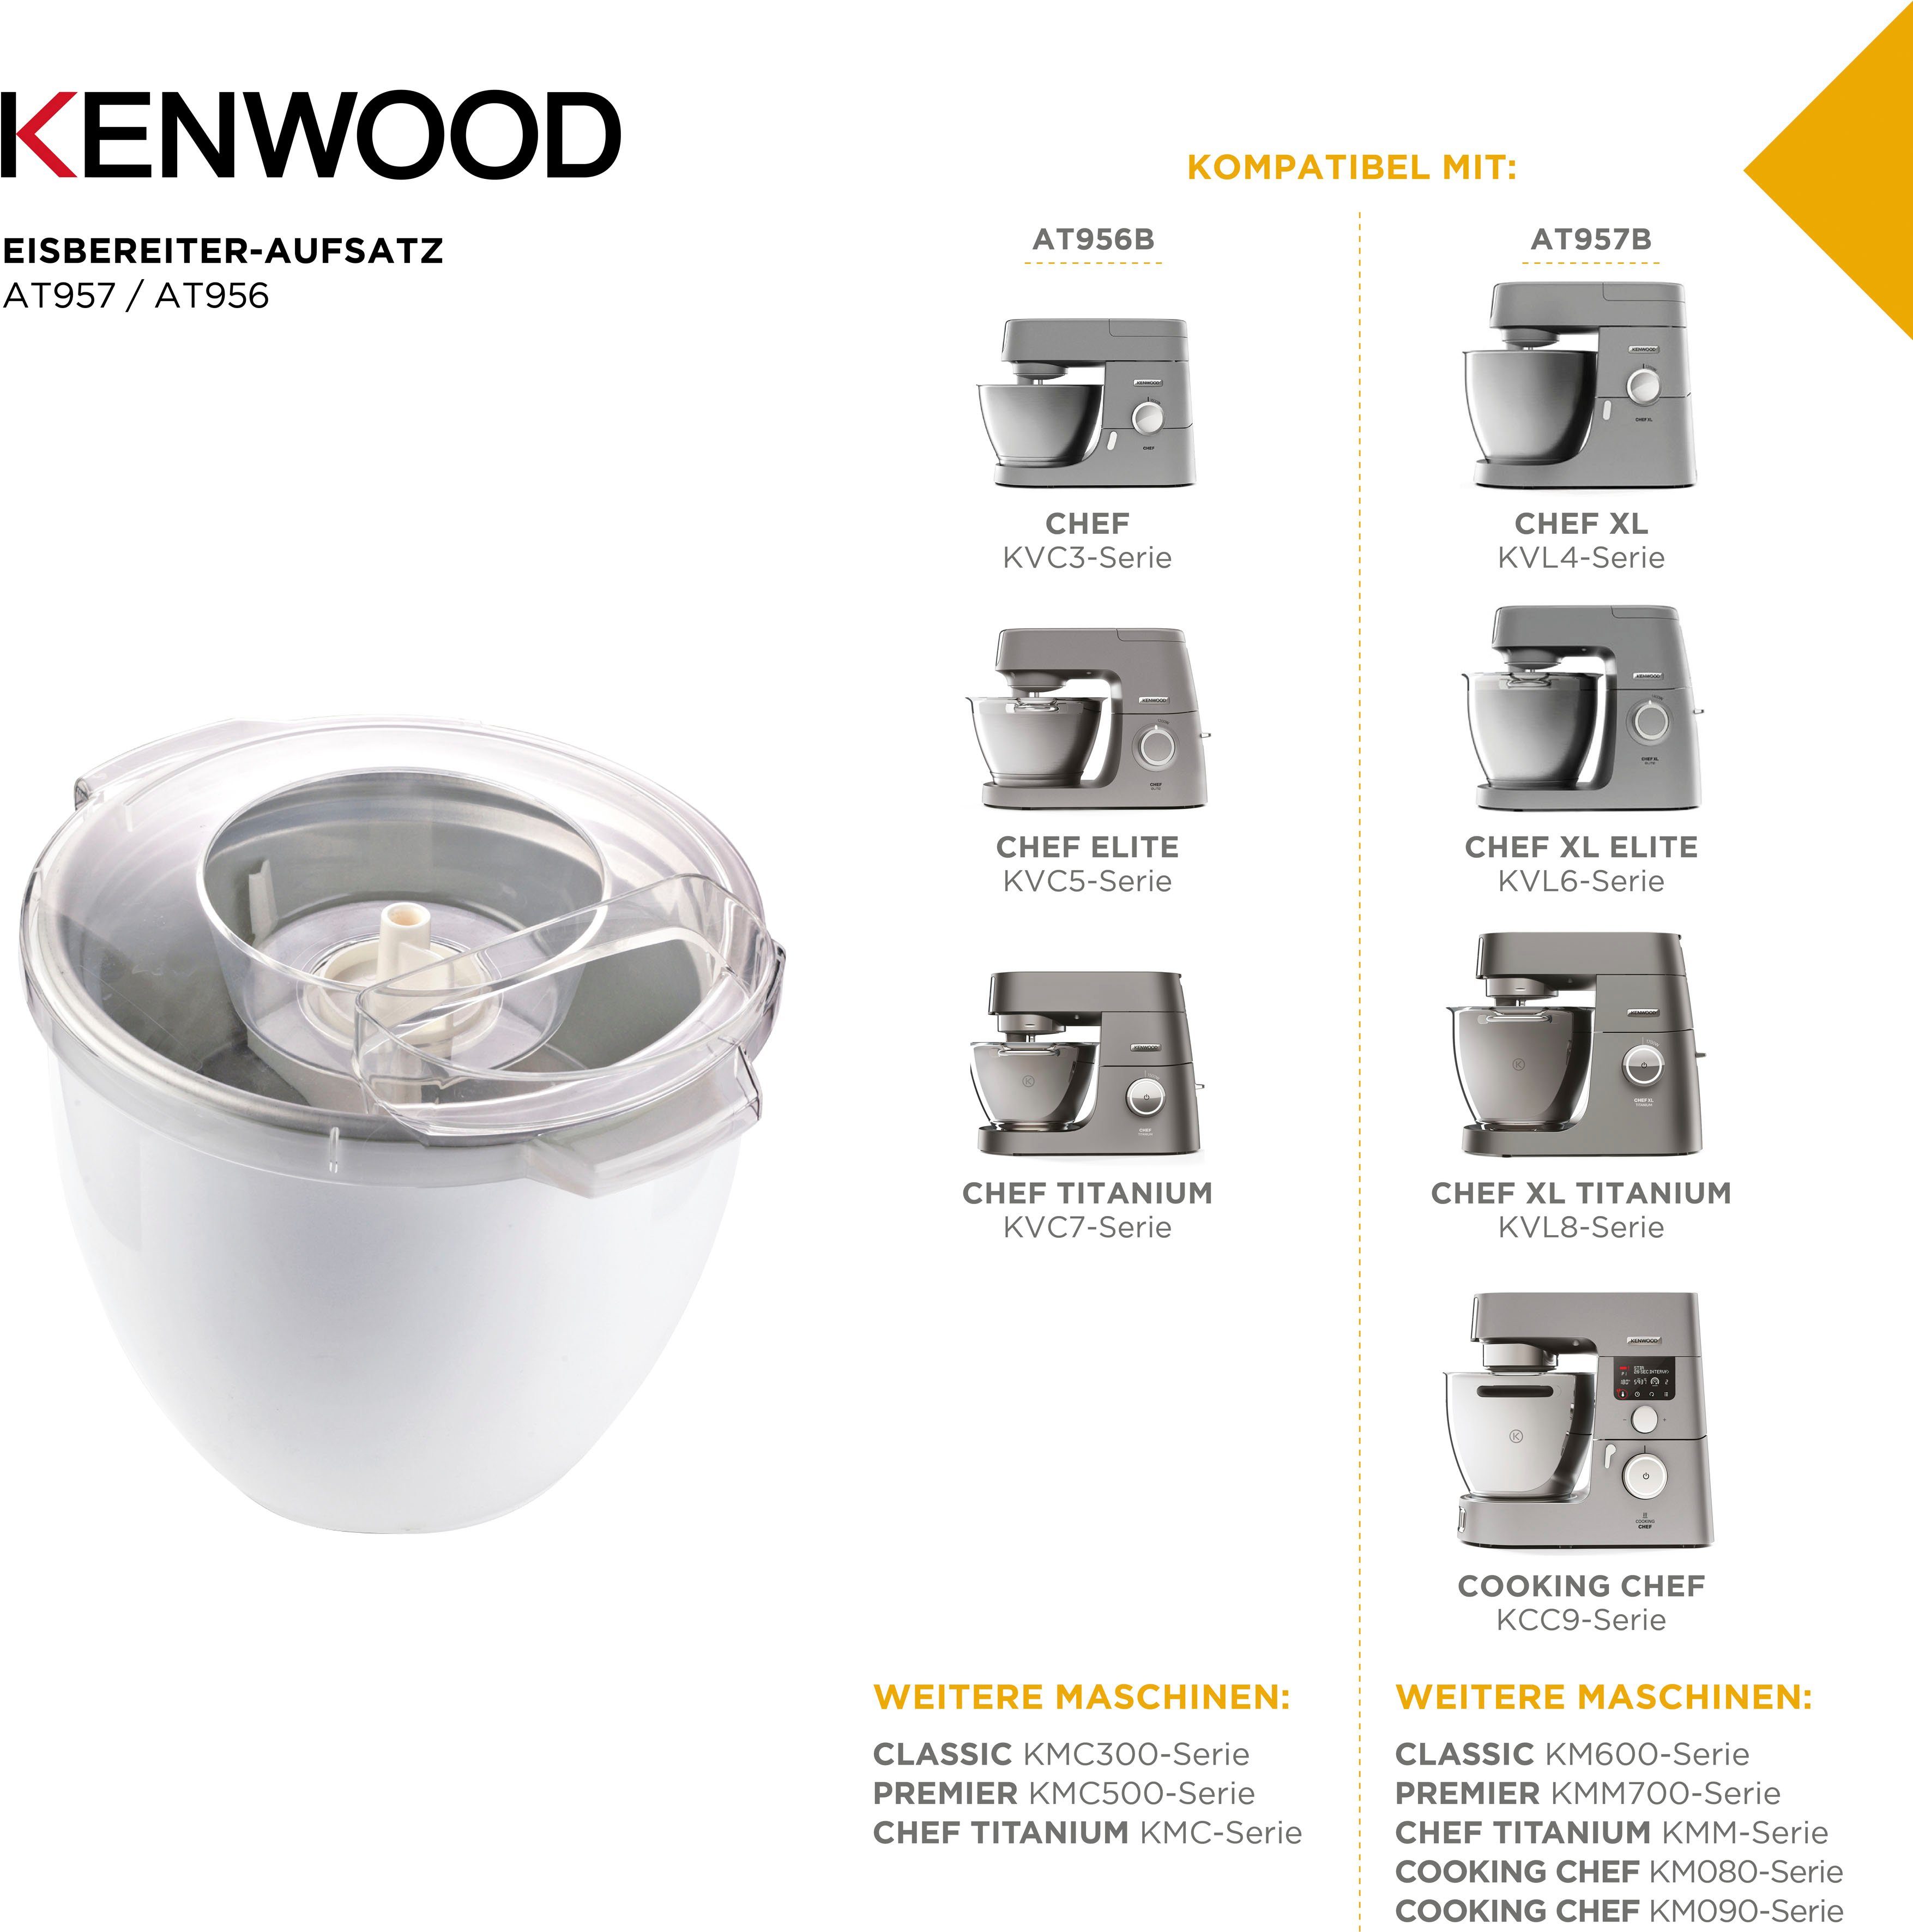 KENWOOD Eisbereiteraufsatz AT957, Zubehör für Kenwood Küchenmaschinen (Chef  XL-Größe)